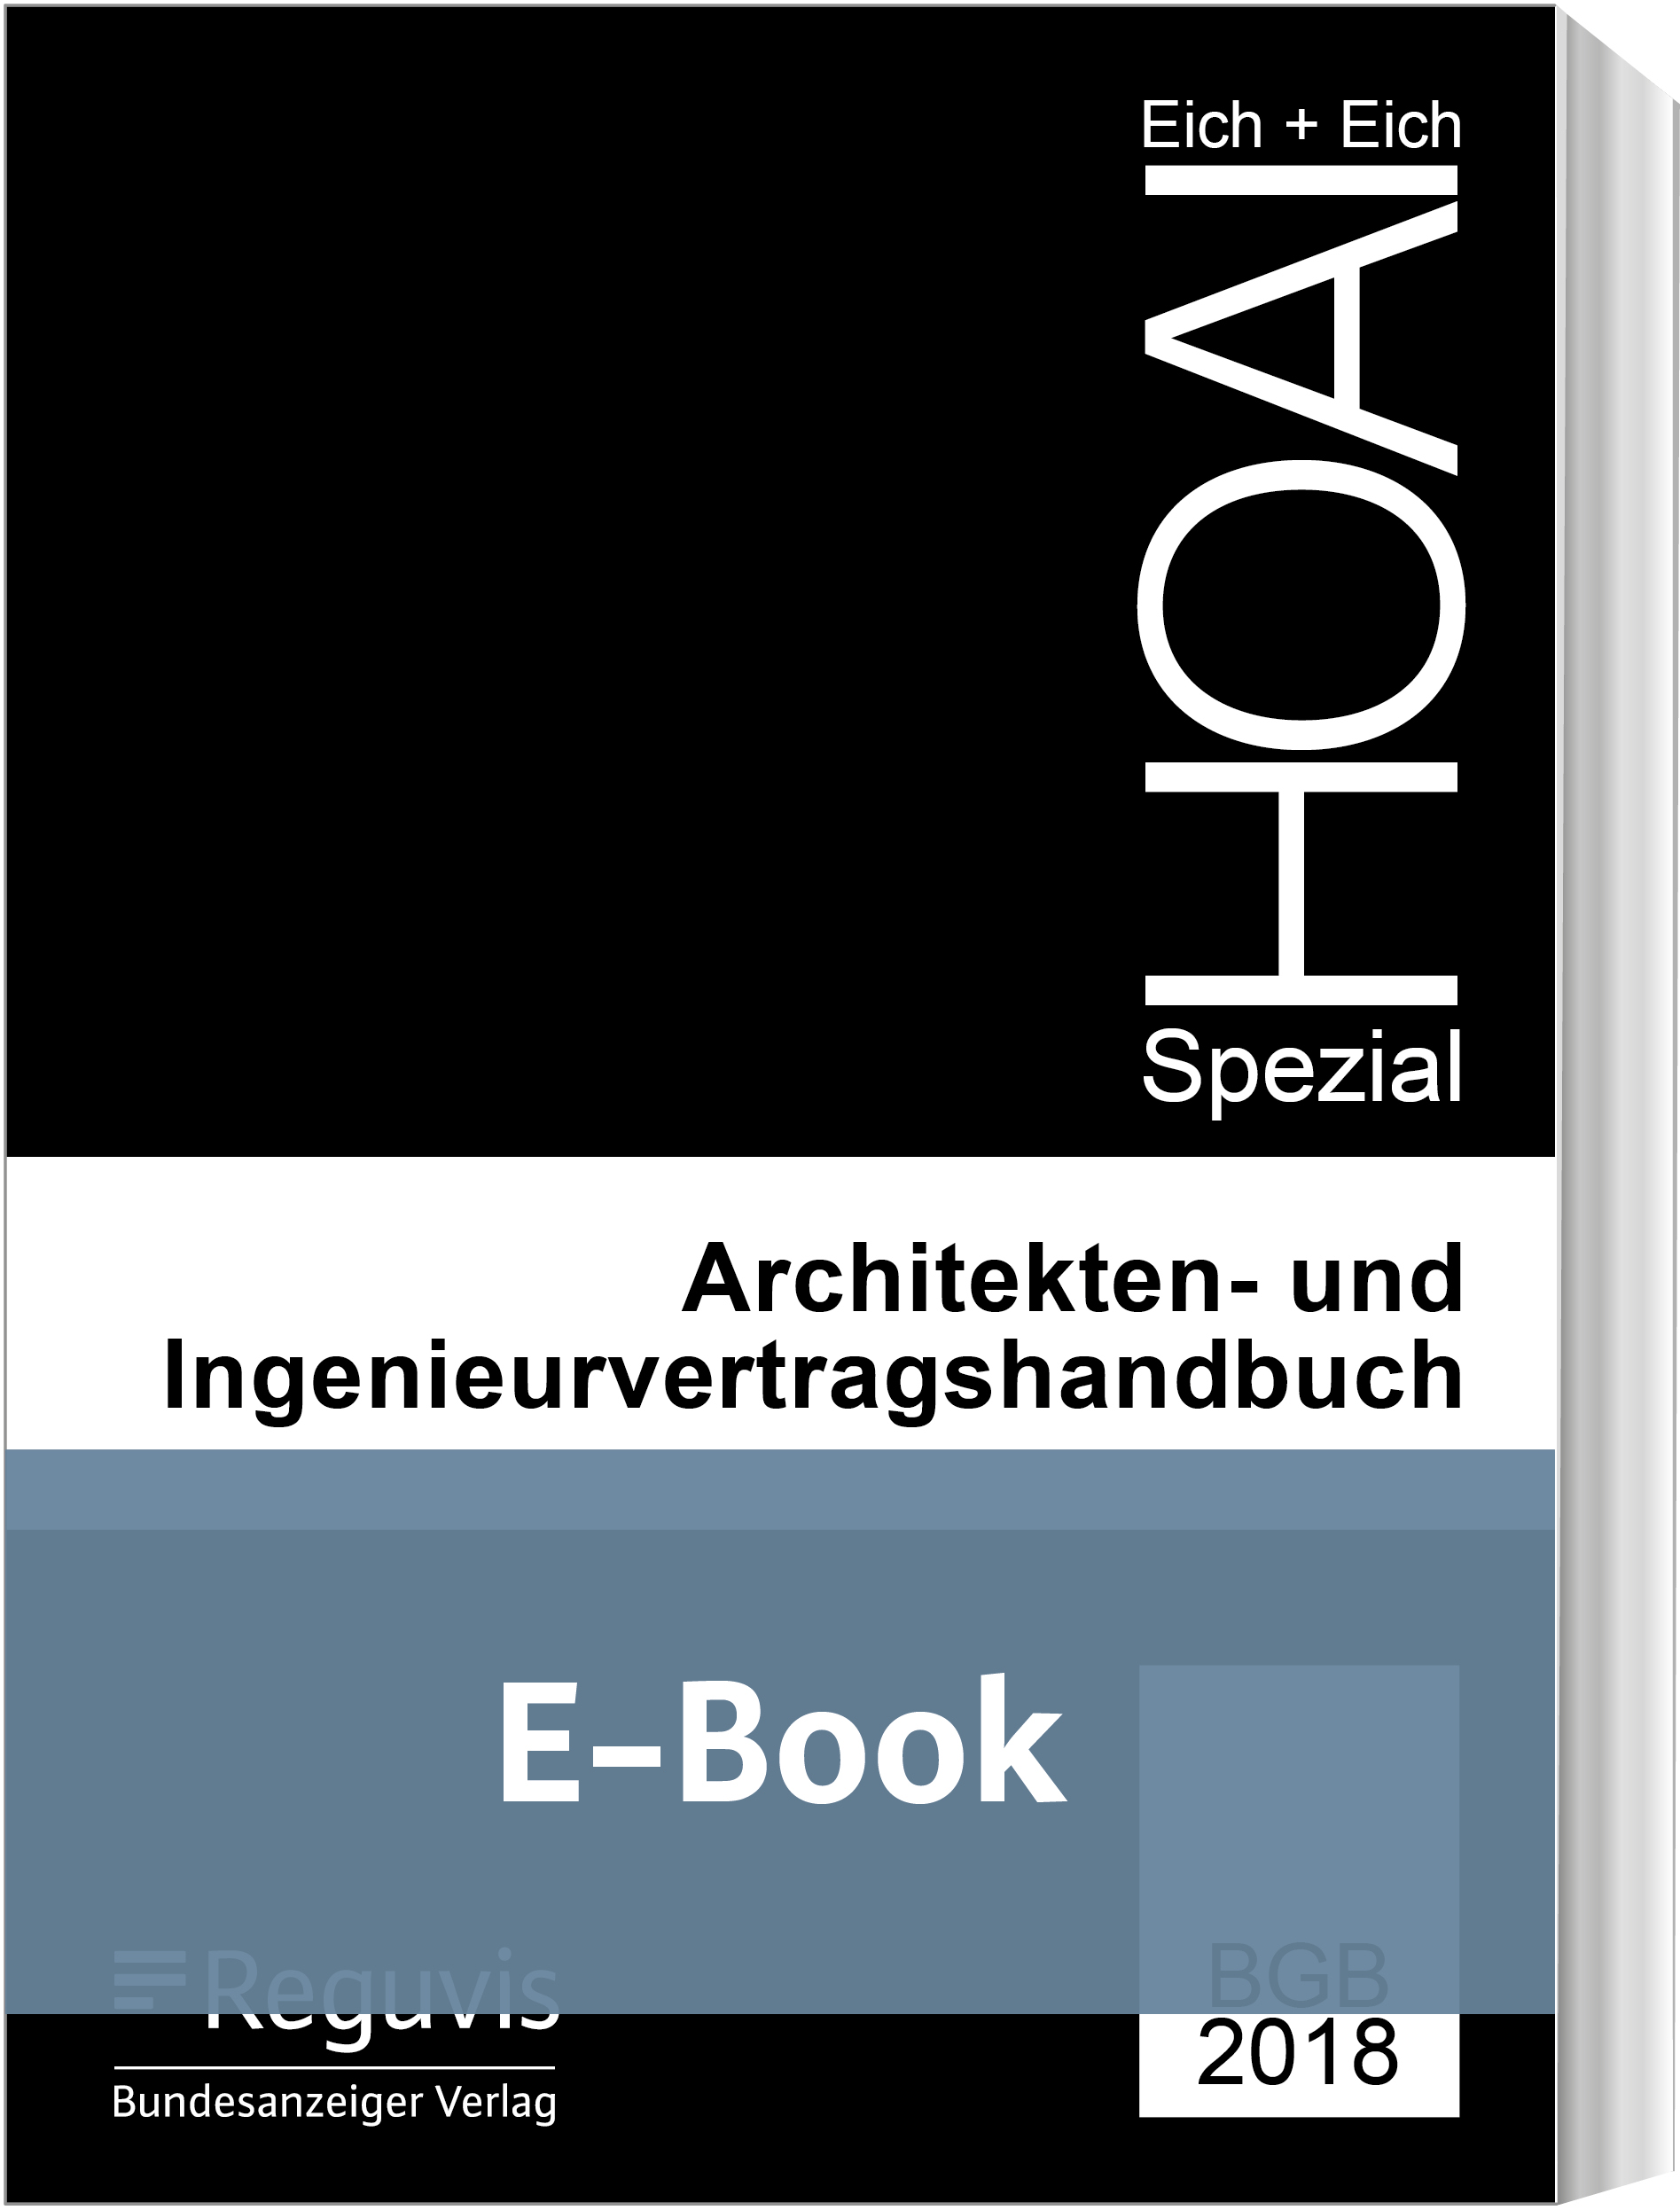 Architekten- und Ingenieurvertragshandbuch (E-Book)